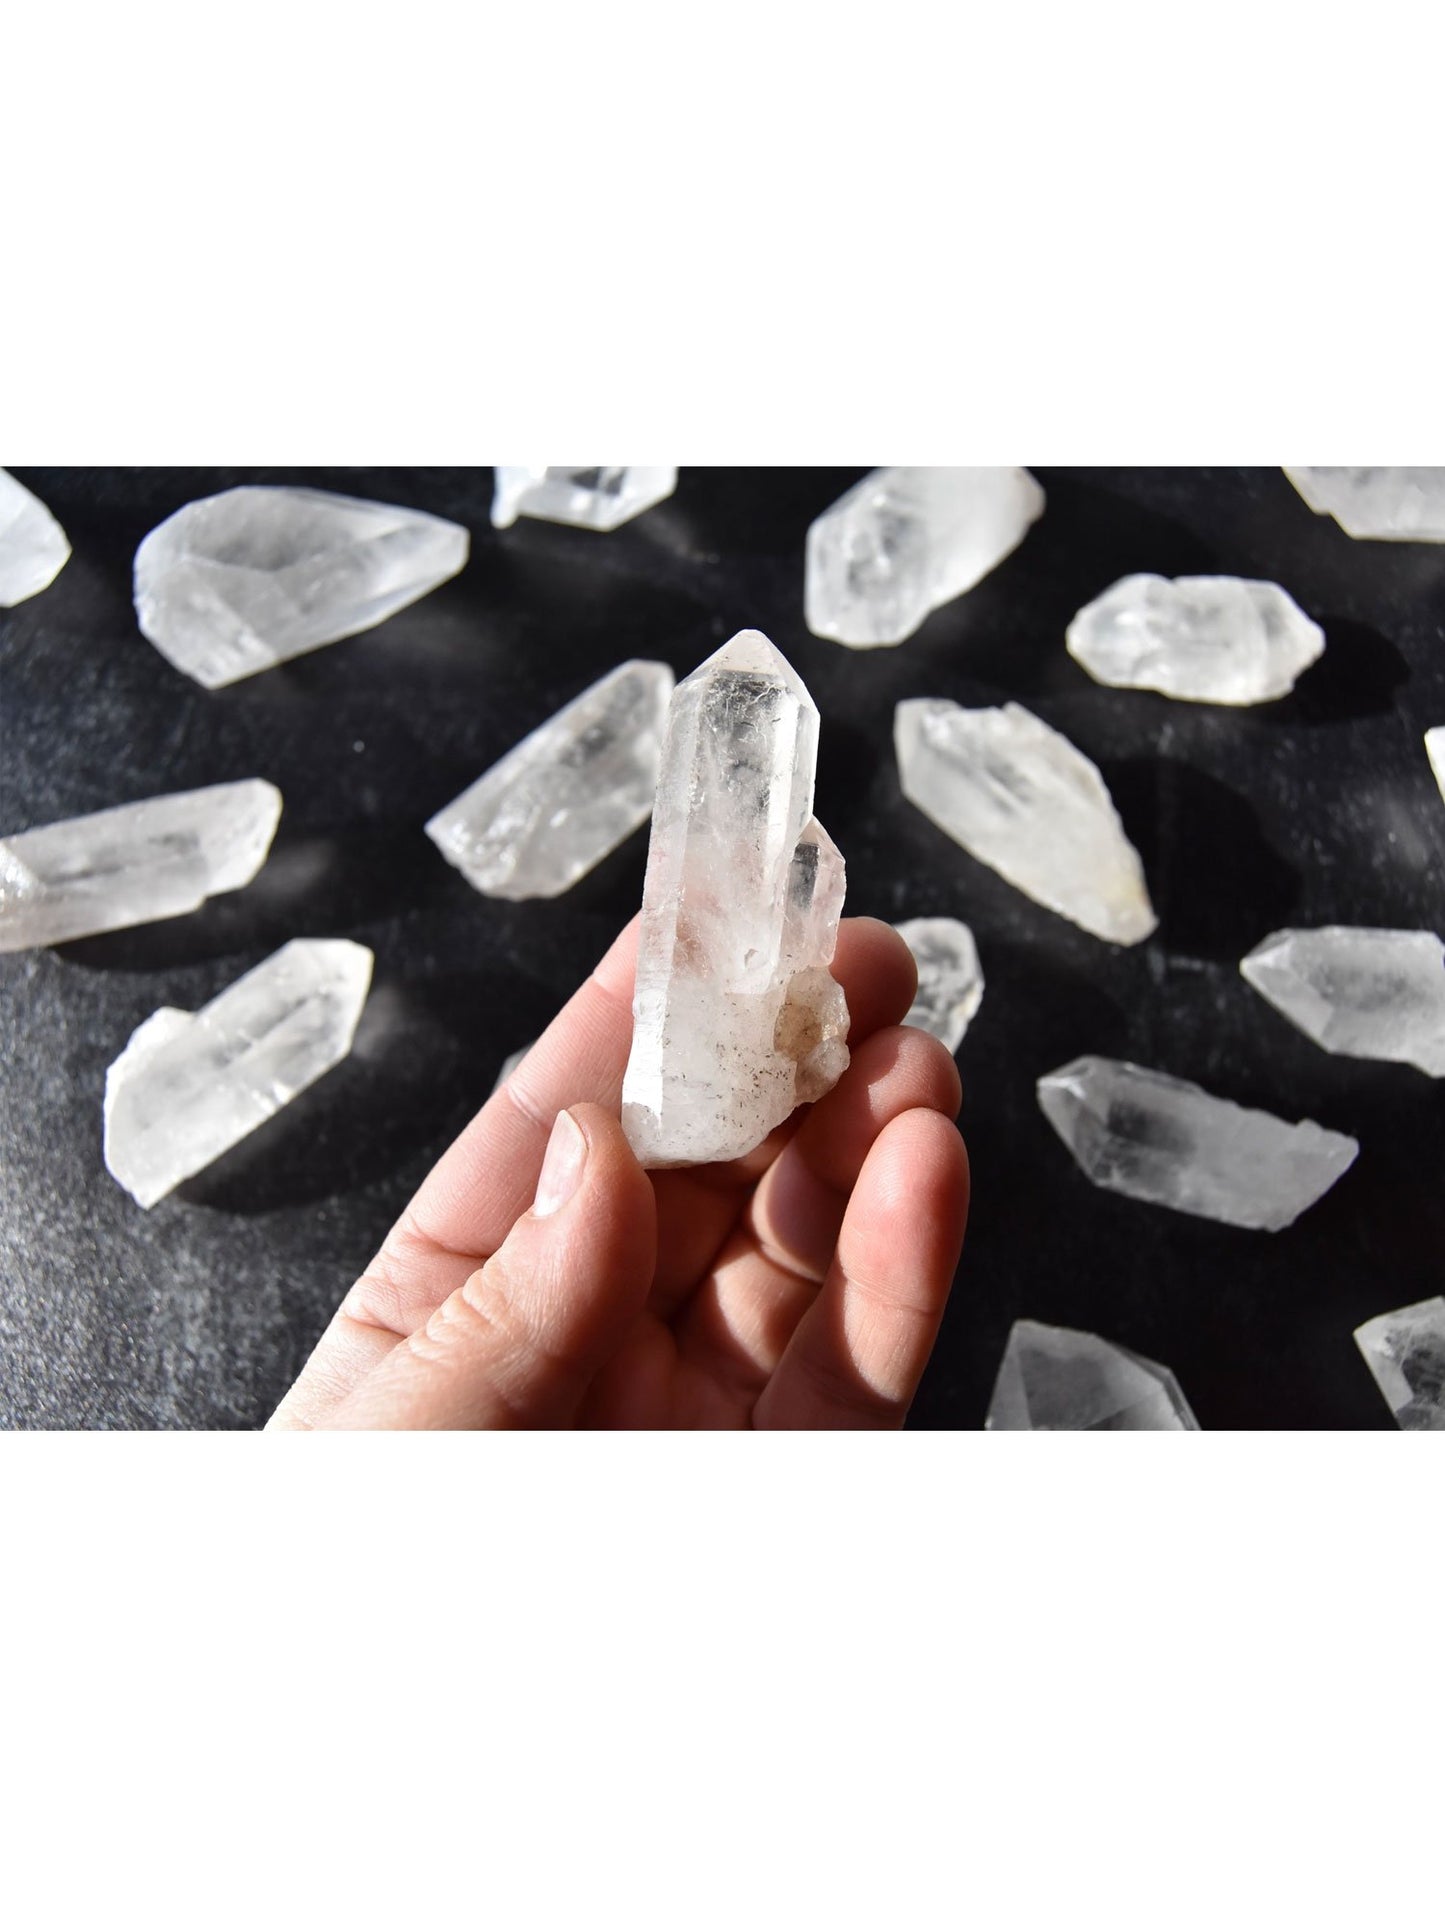 Points de cristal de Quartz d'apothicaire à cœur ouvert, minéraux de guérison bruts du Brésil